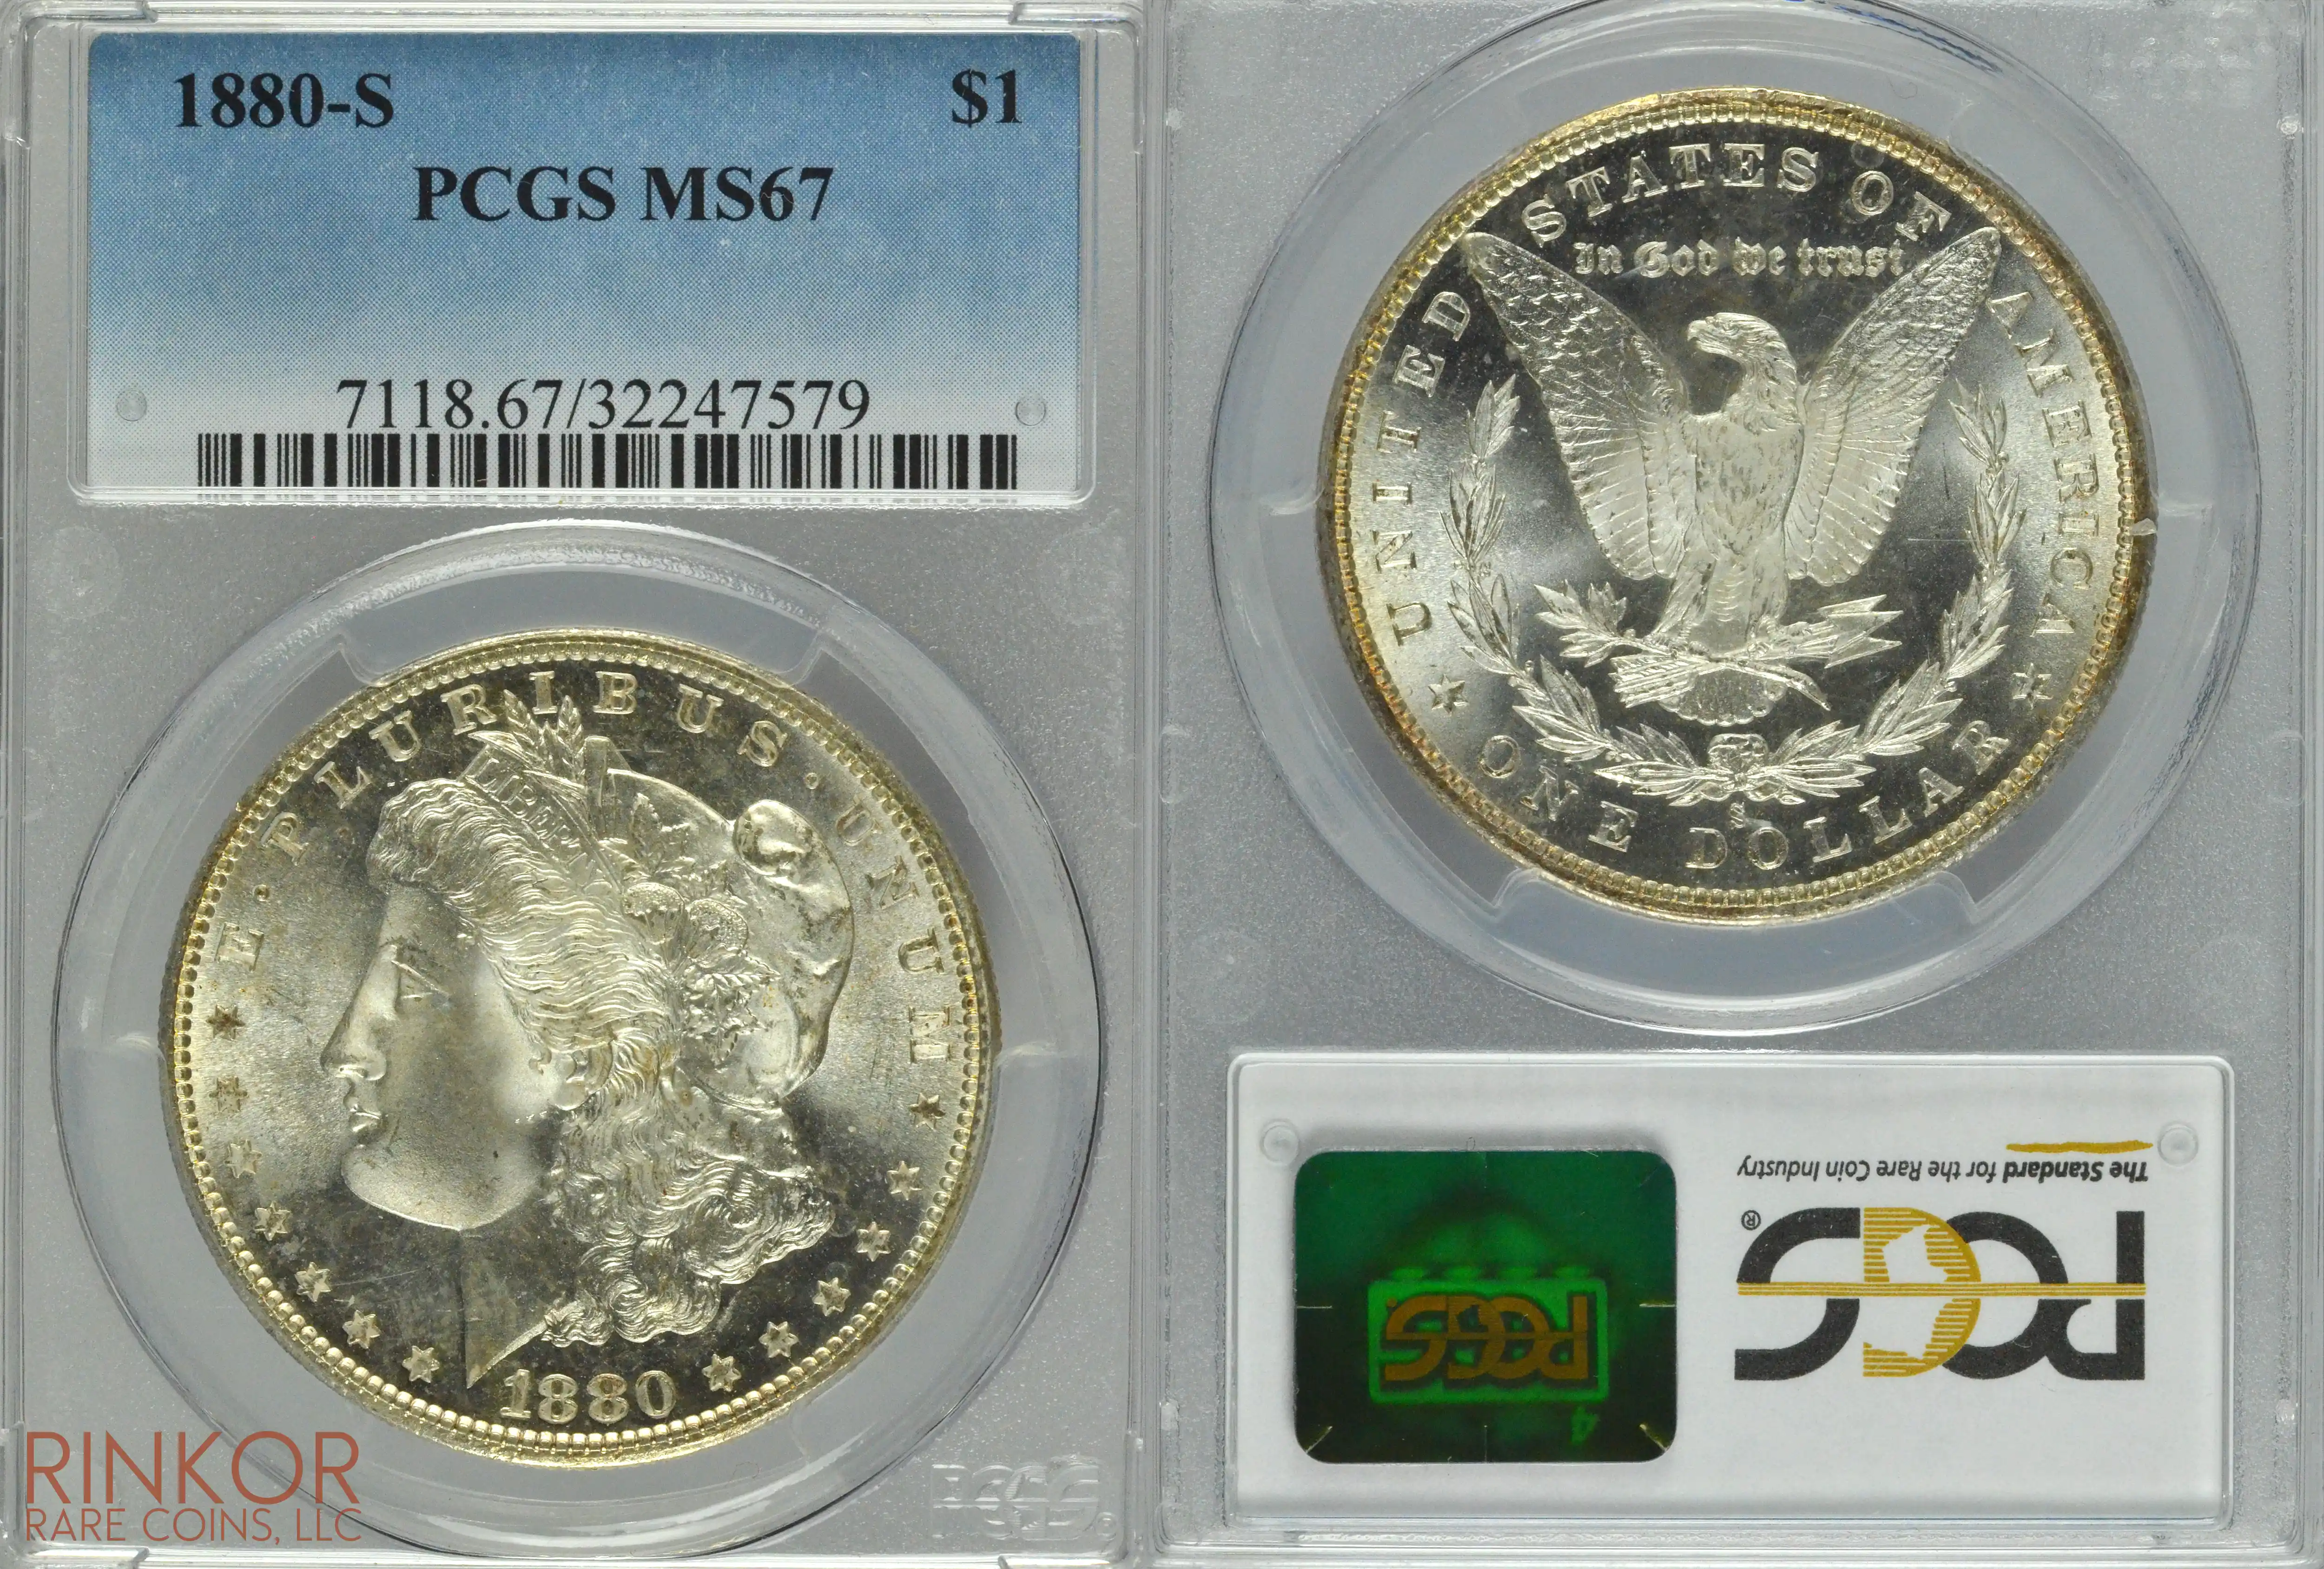 1880-S $1 PCGS MS 67